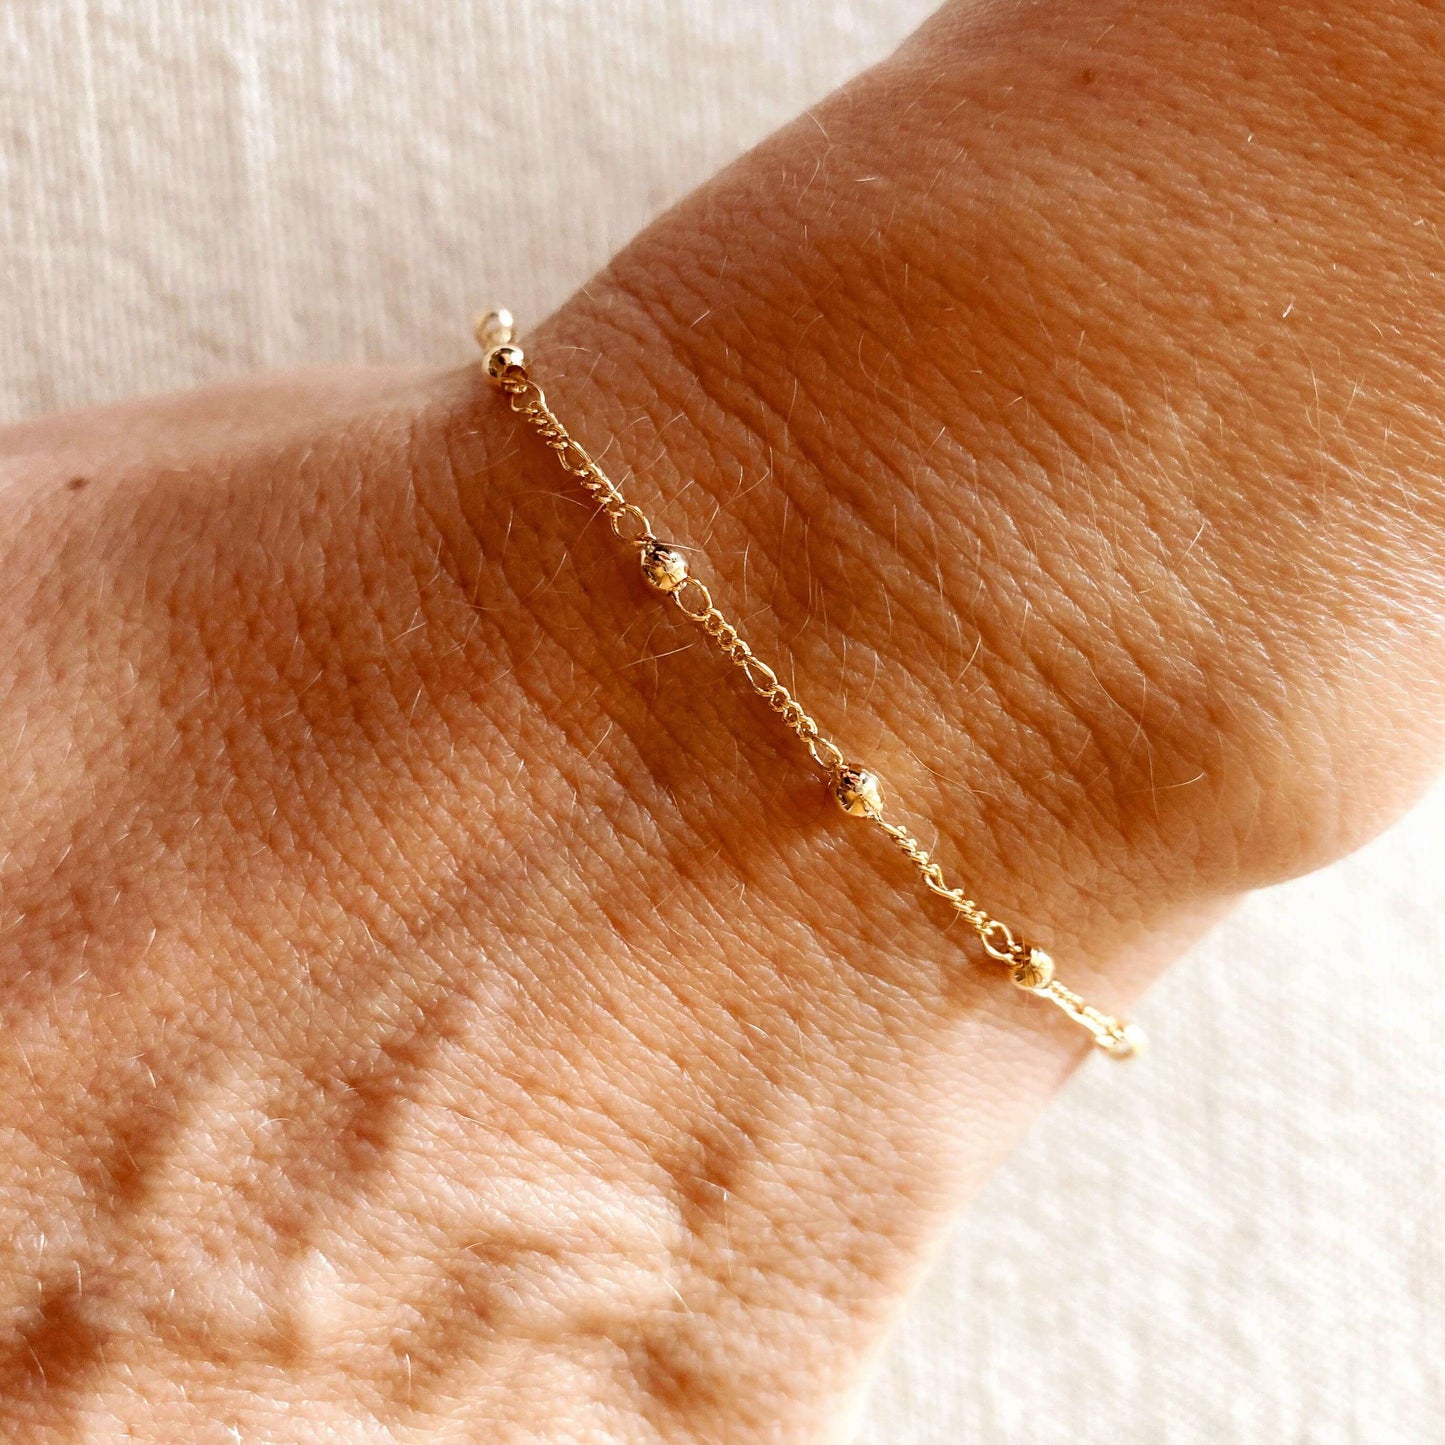 GoldFi 18k Gold Filled Beaded Bracelet with Cross Charm